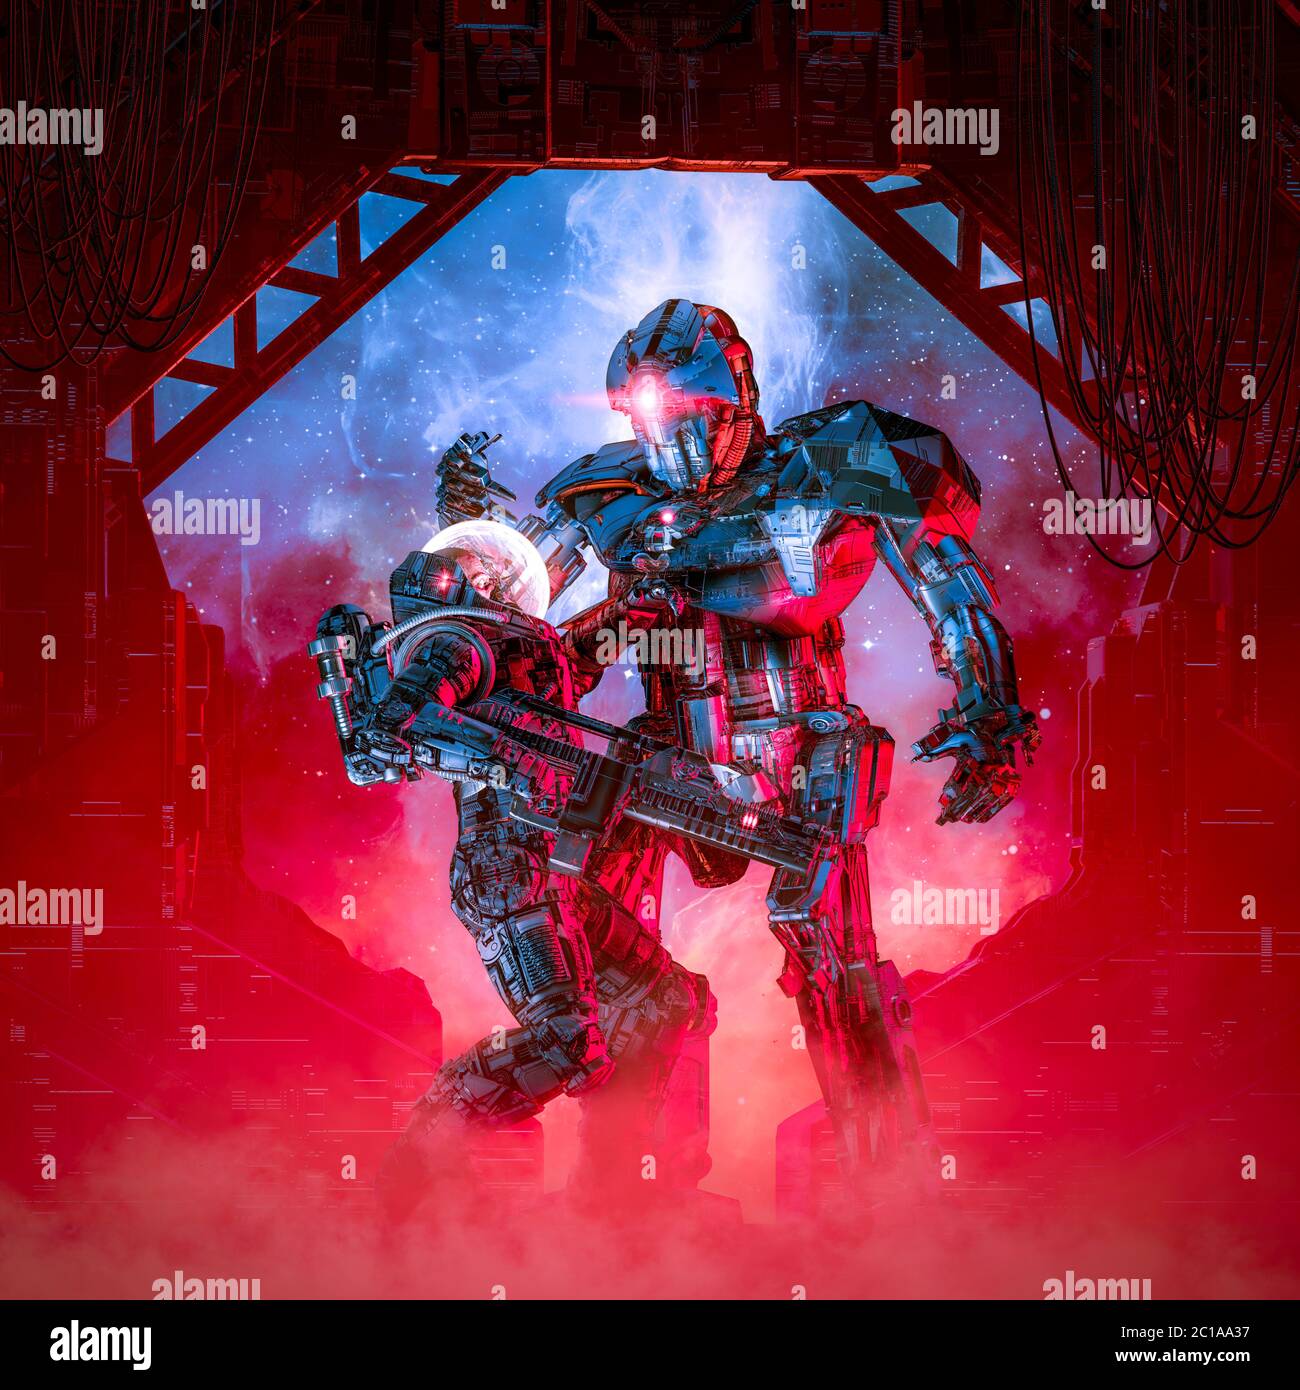 Non è possibile passare / illustrazione 3D di scena di fantascienza retrò mostrando astronauta militare blindato che combattono giganteschi robot alieni in aereo nave spaziale Foto Stock